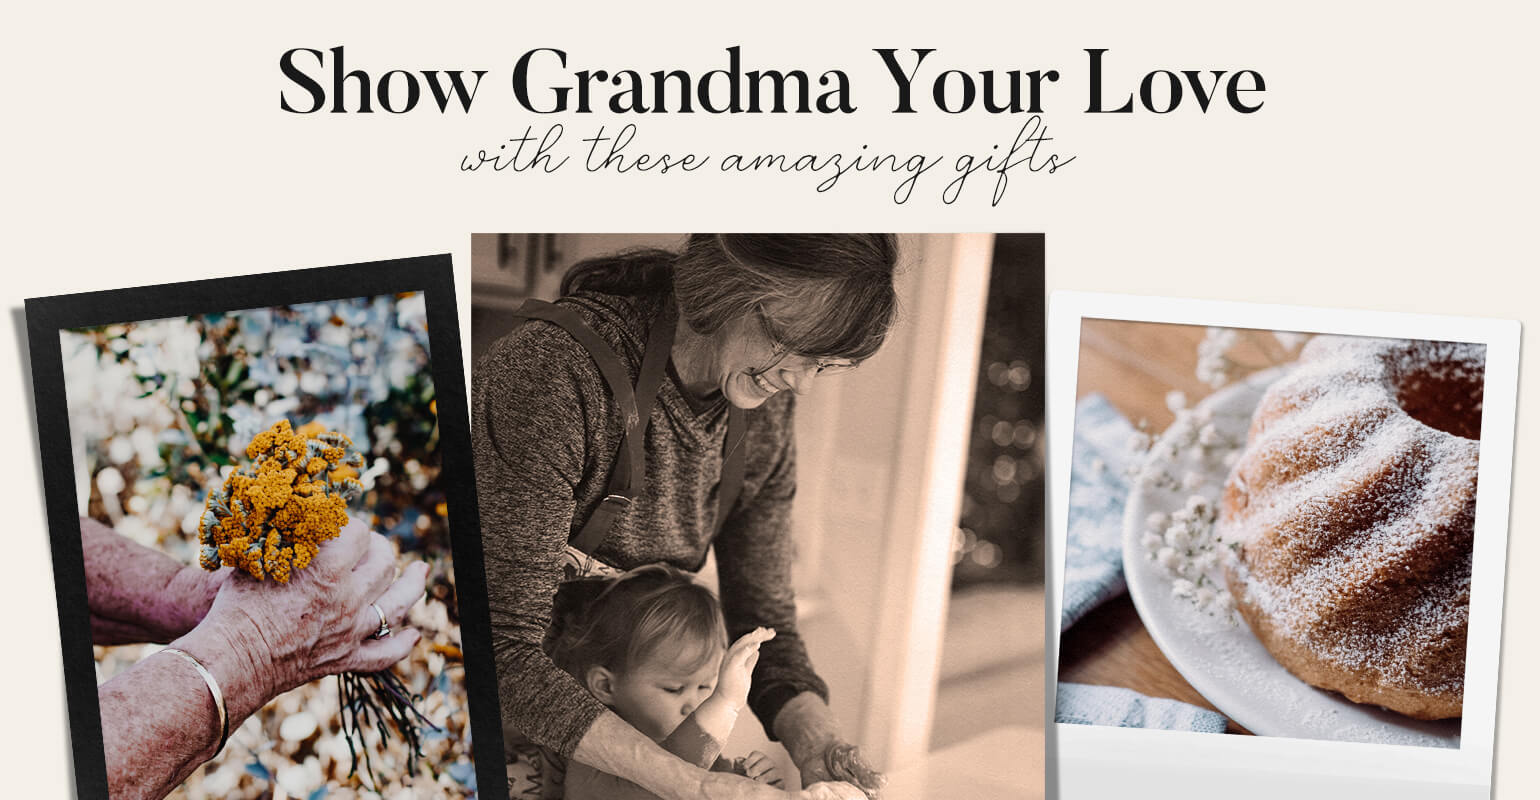 15 Nontraditional Gifts for Grandma She Will Appreciate